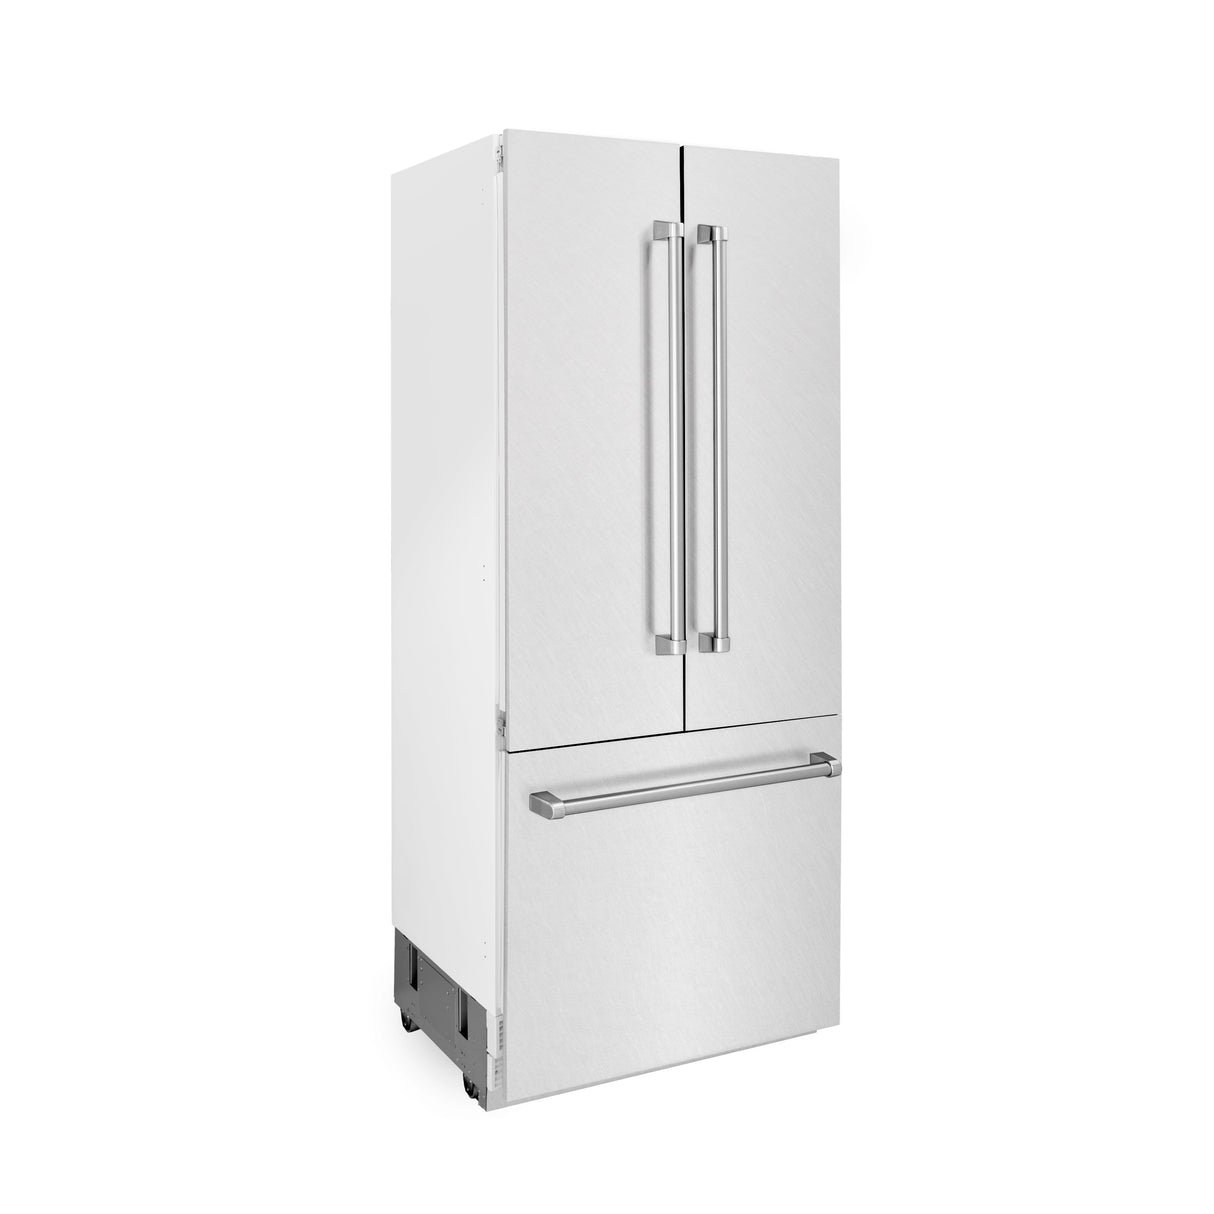 ZLINE 36 in. 19.6 cu. ft. Built-In 3-Door French Door Refrigerator with Internal Water and Ice Dispenser in Fingerprint Resistant Stainless Steel (RBIV-SN-36)